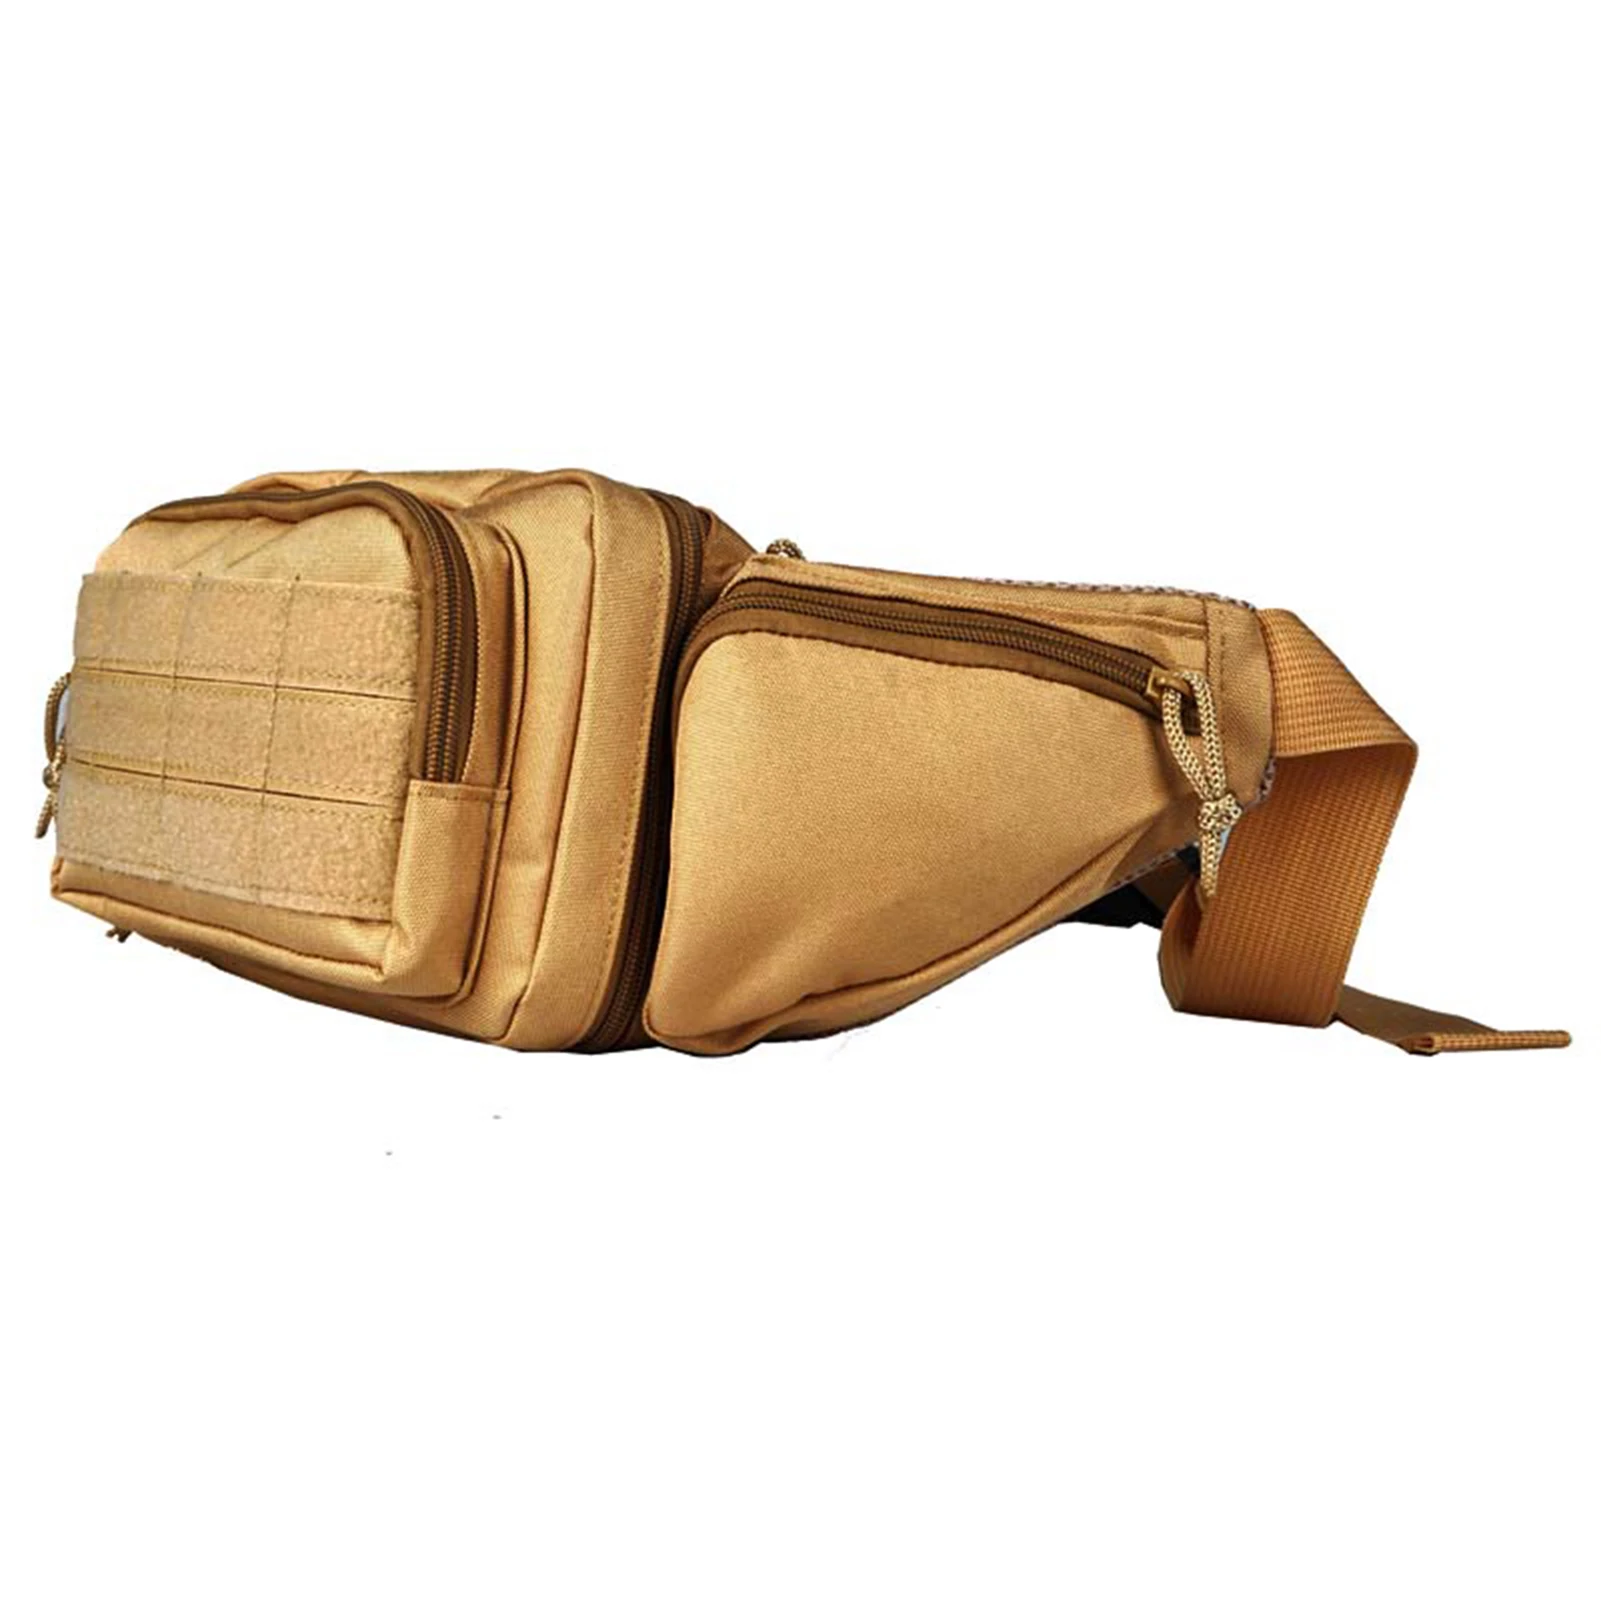 Мужская Женская поясная сумка с 4 карманами на молнии, водонепроницаемая поясная сумка для путешествий, занятий спортом, бега, пеших прогулок